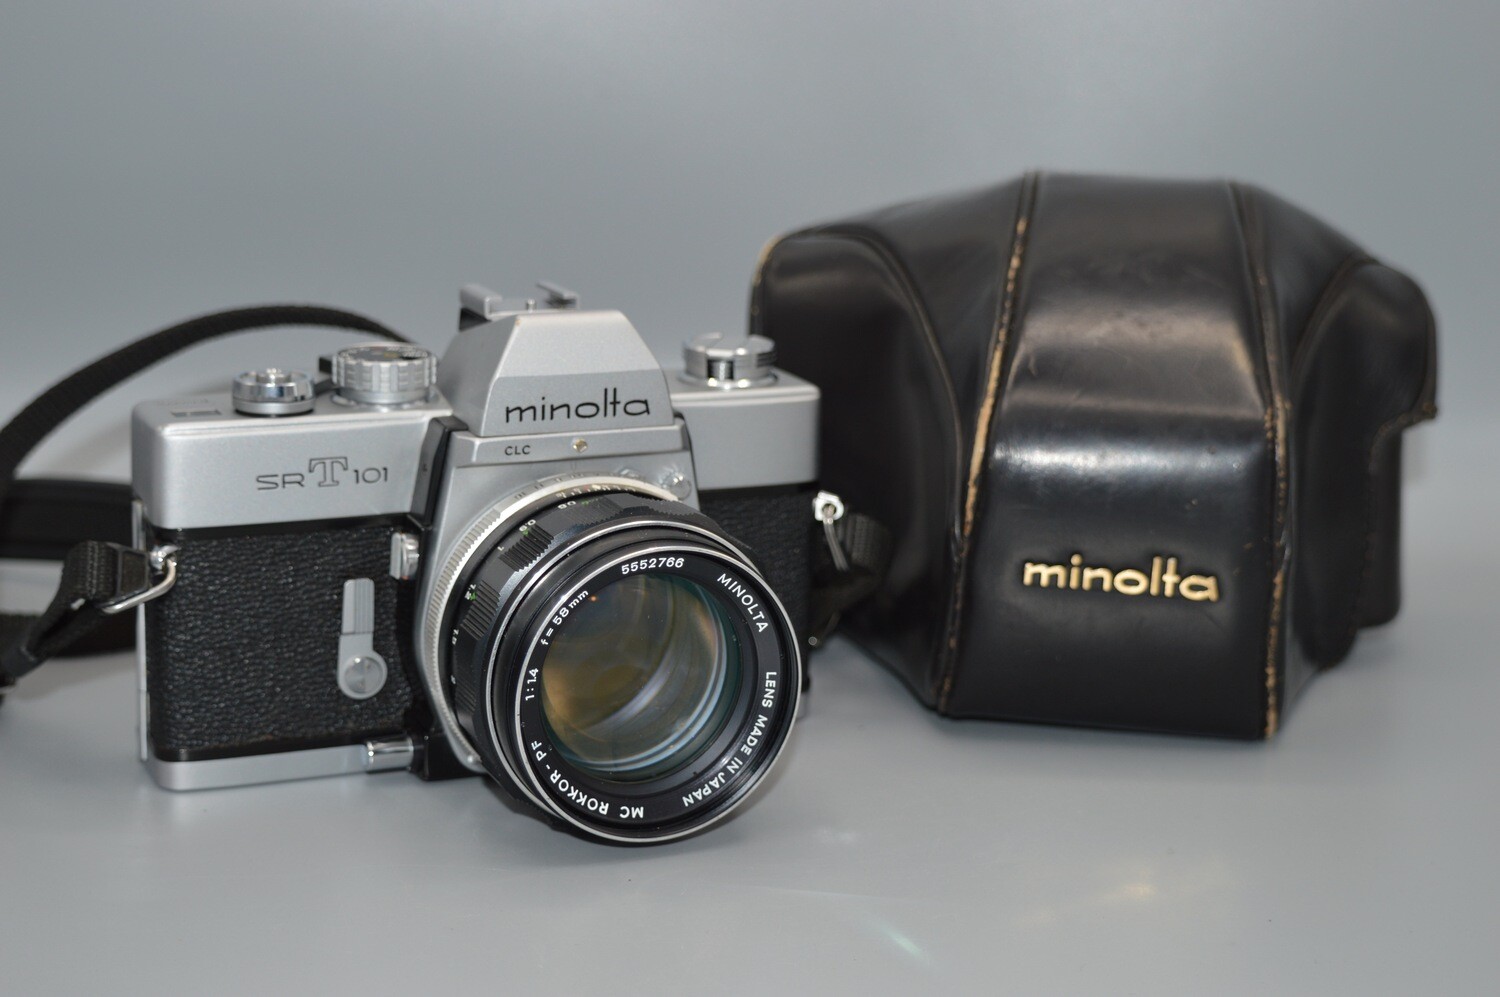 Minolta SRT 101 SLR 35mm Film Camera with lens 1:1.4 58mm lens